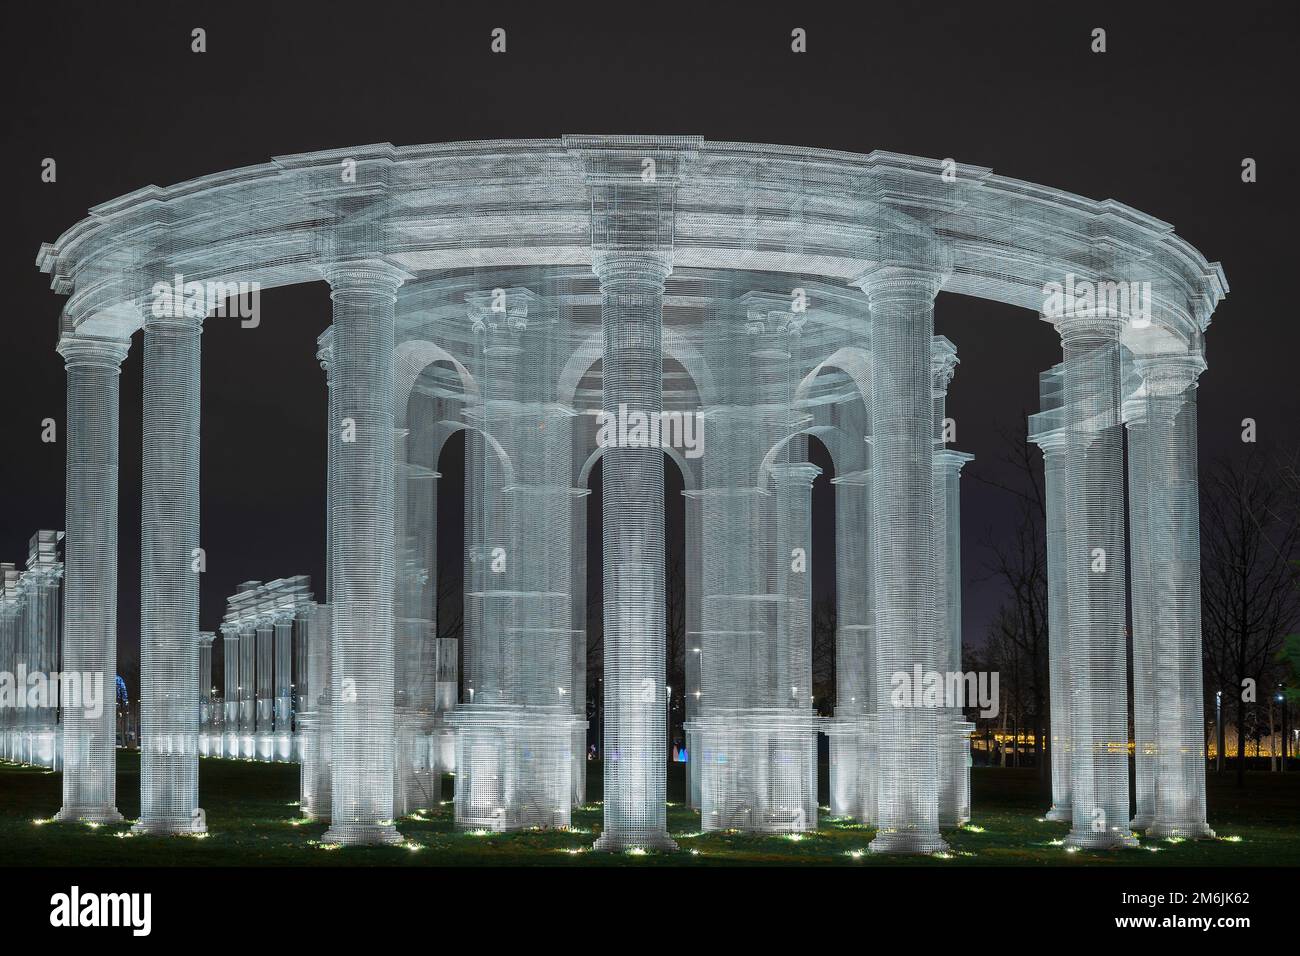 Rusia, Krasnodar 07.01.2022. Enorme columnata luminosa en estilo romano decora el parque por la noche. Foto de stock